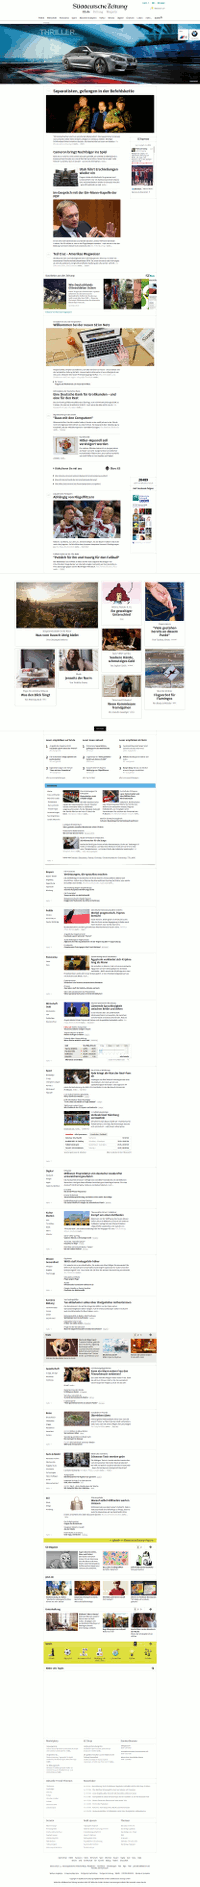 Die neue Homepage der Sddeutschen
Screenshot: Netzpresse